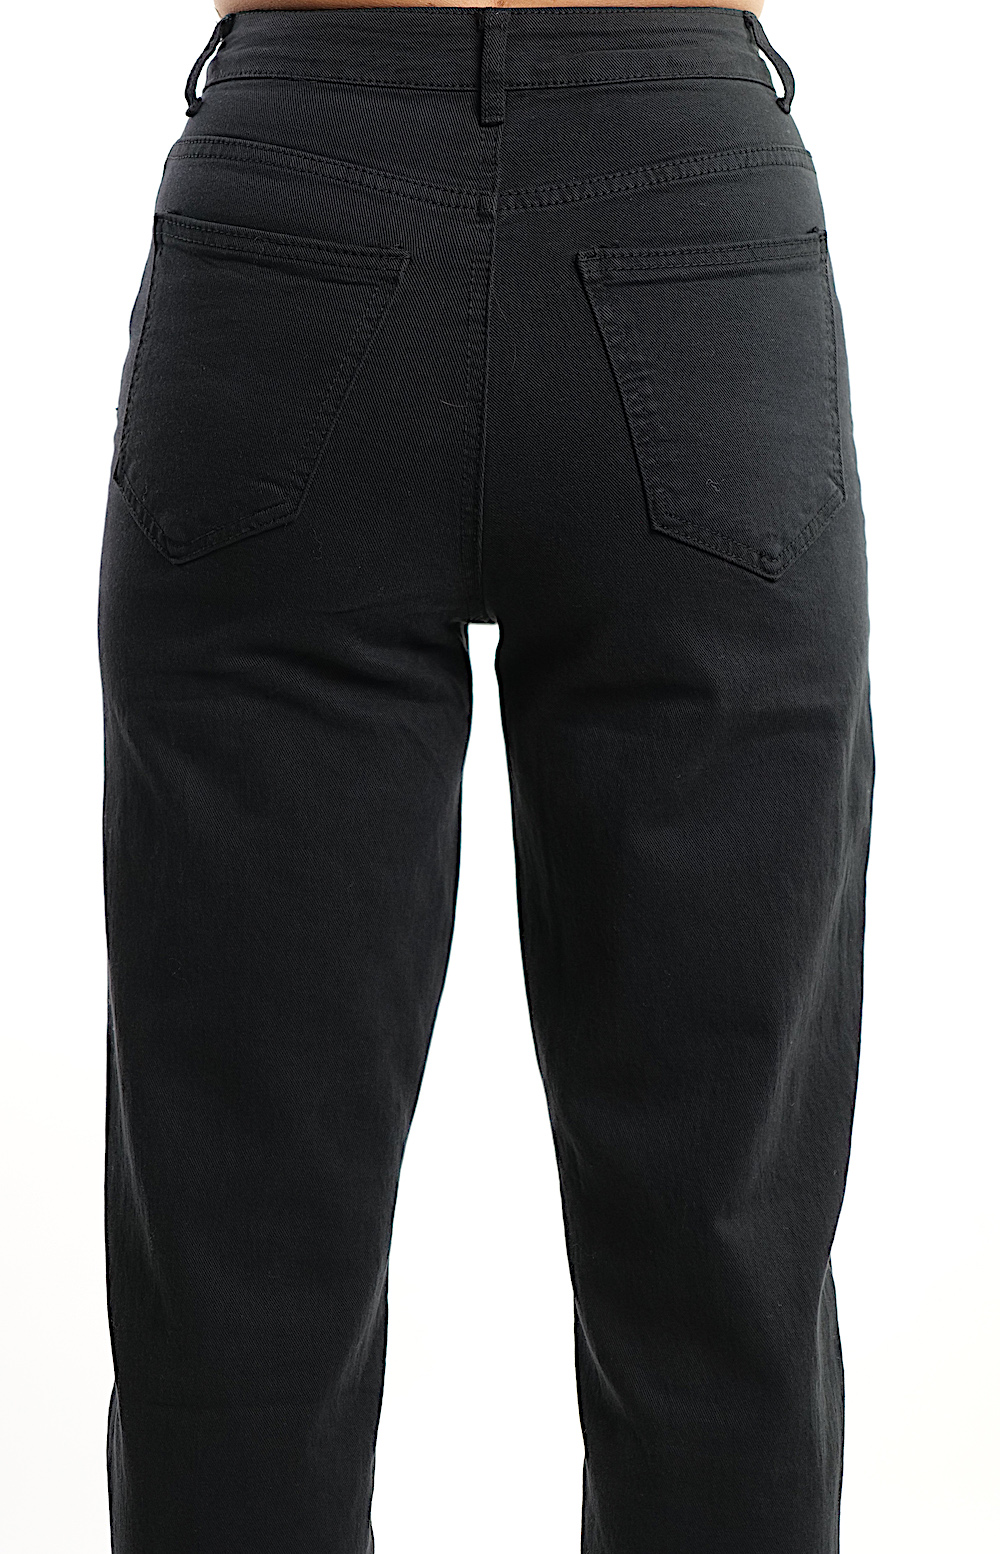 Чёрные джинсы скини итальянского бренда No-Na